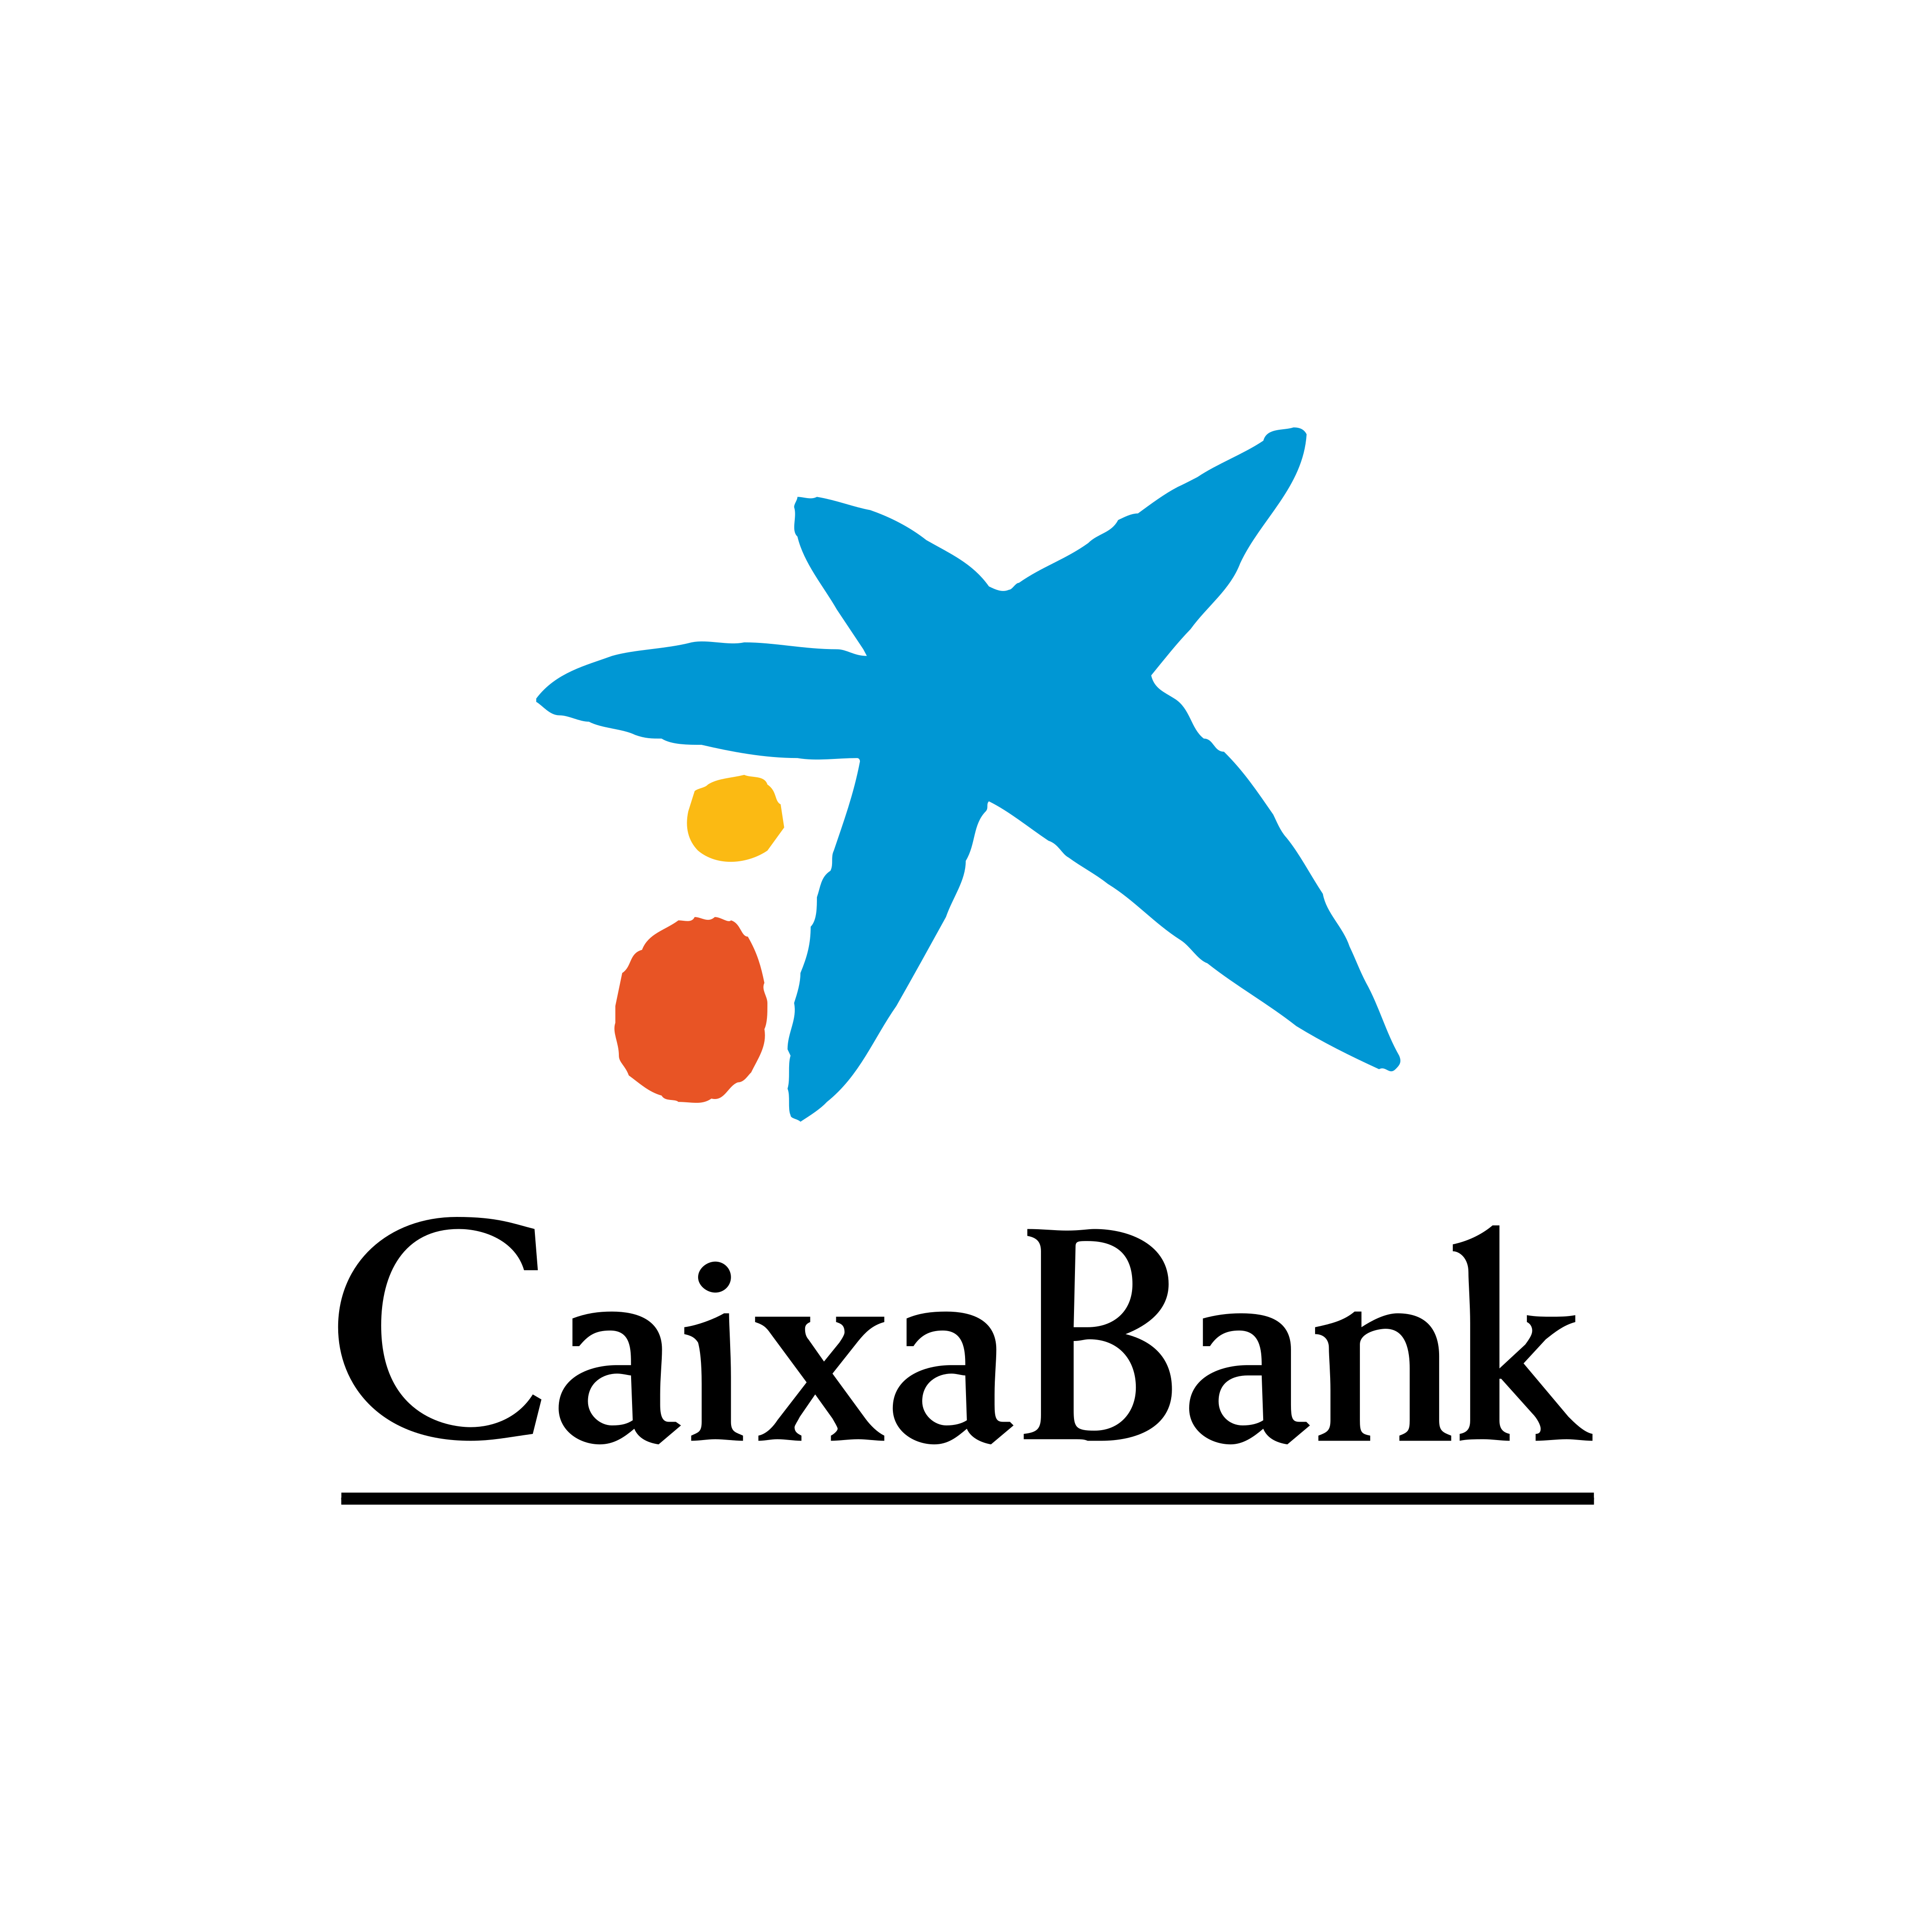 la caixa bank logo 0 - La Caixa Bank Logo